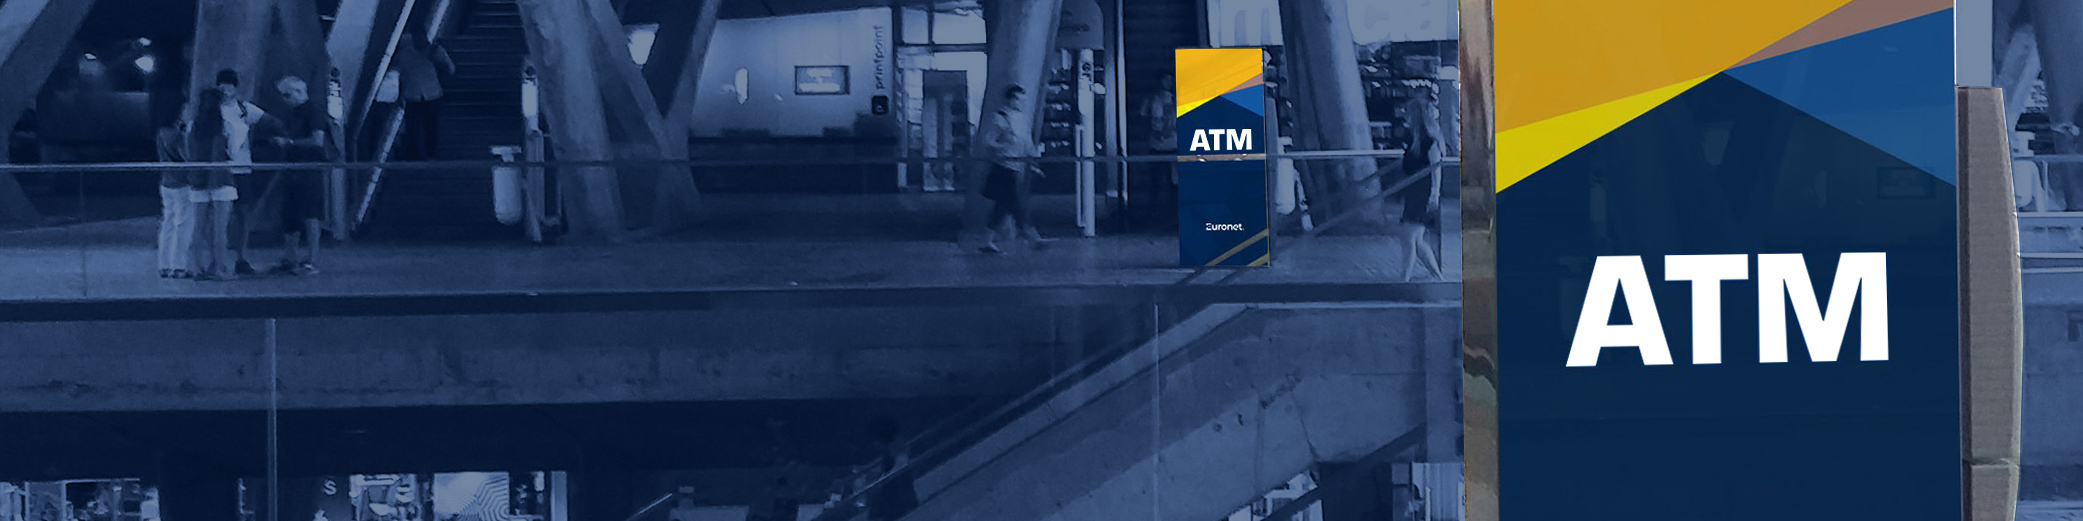 Aumenta i clienti e le vendite con un ATM Euronet